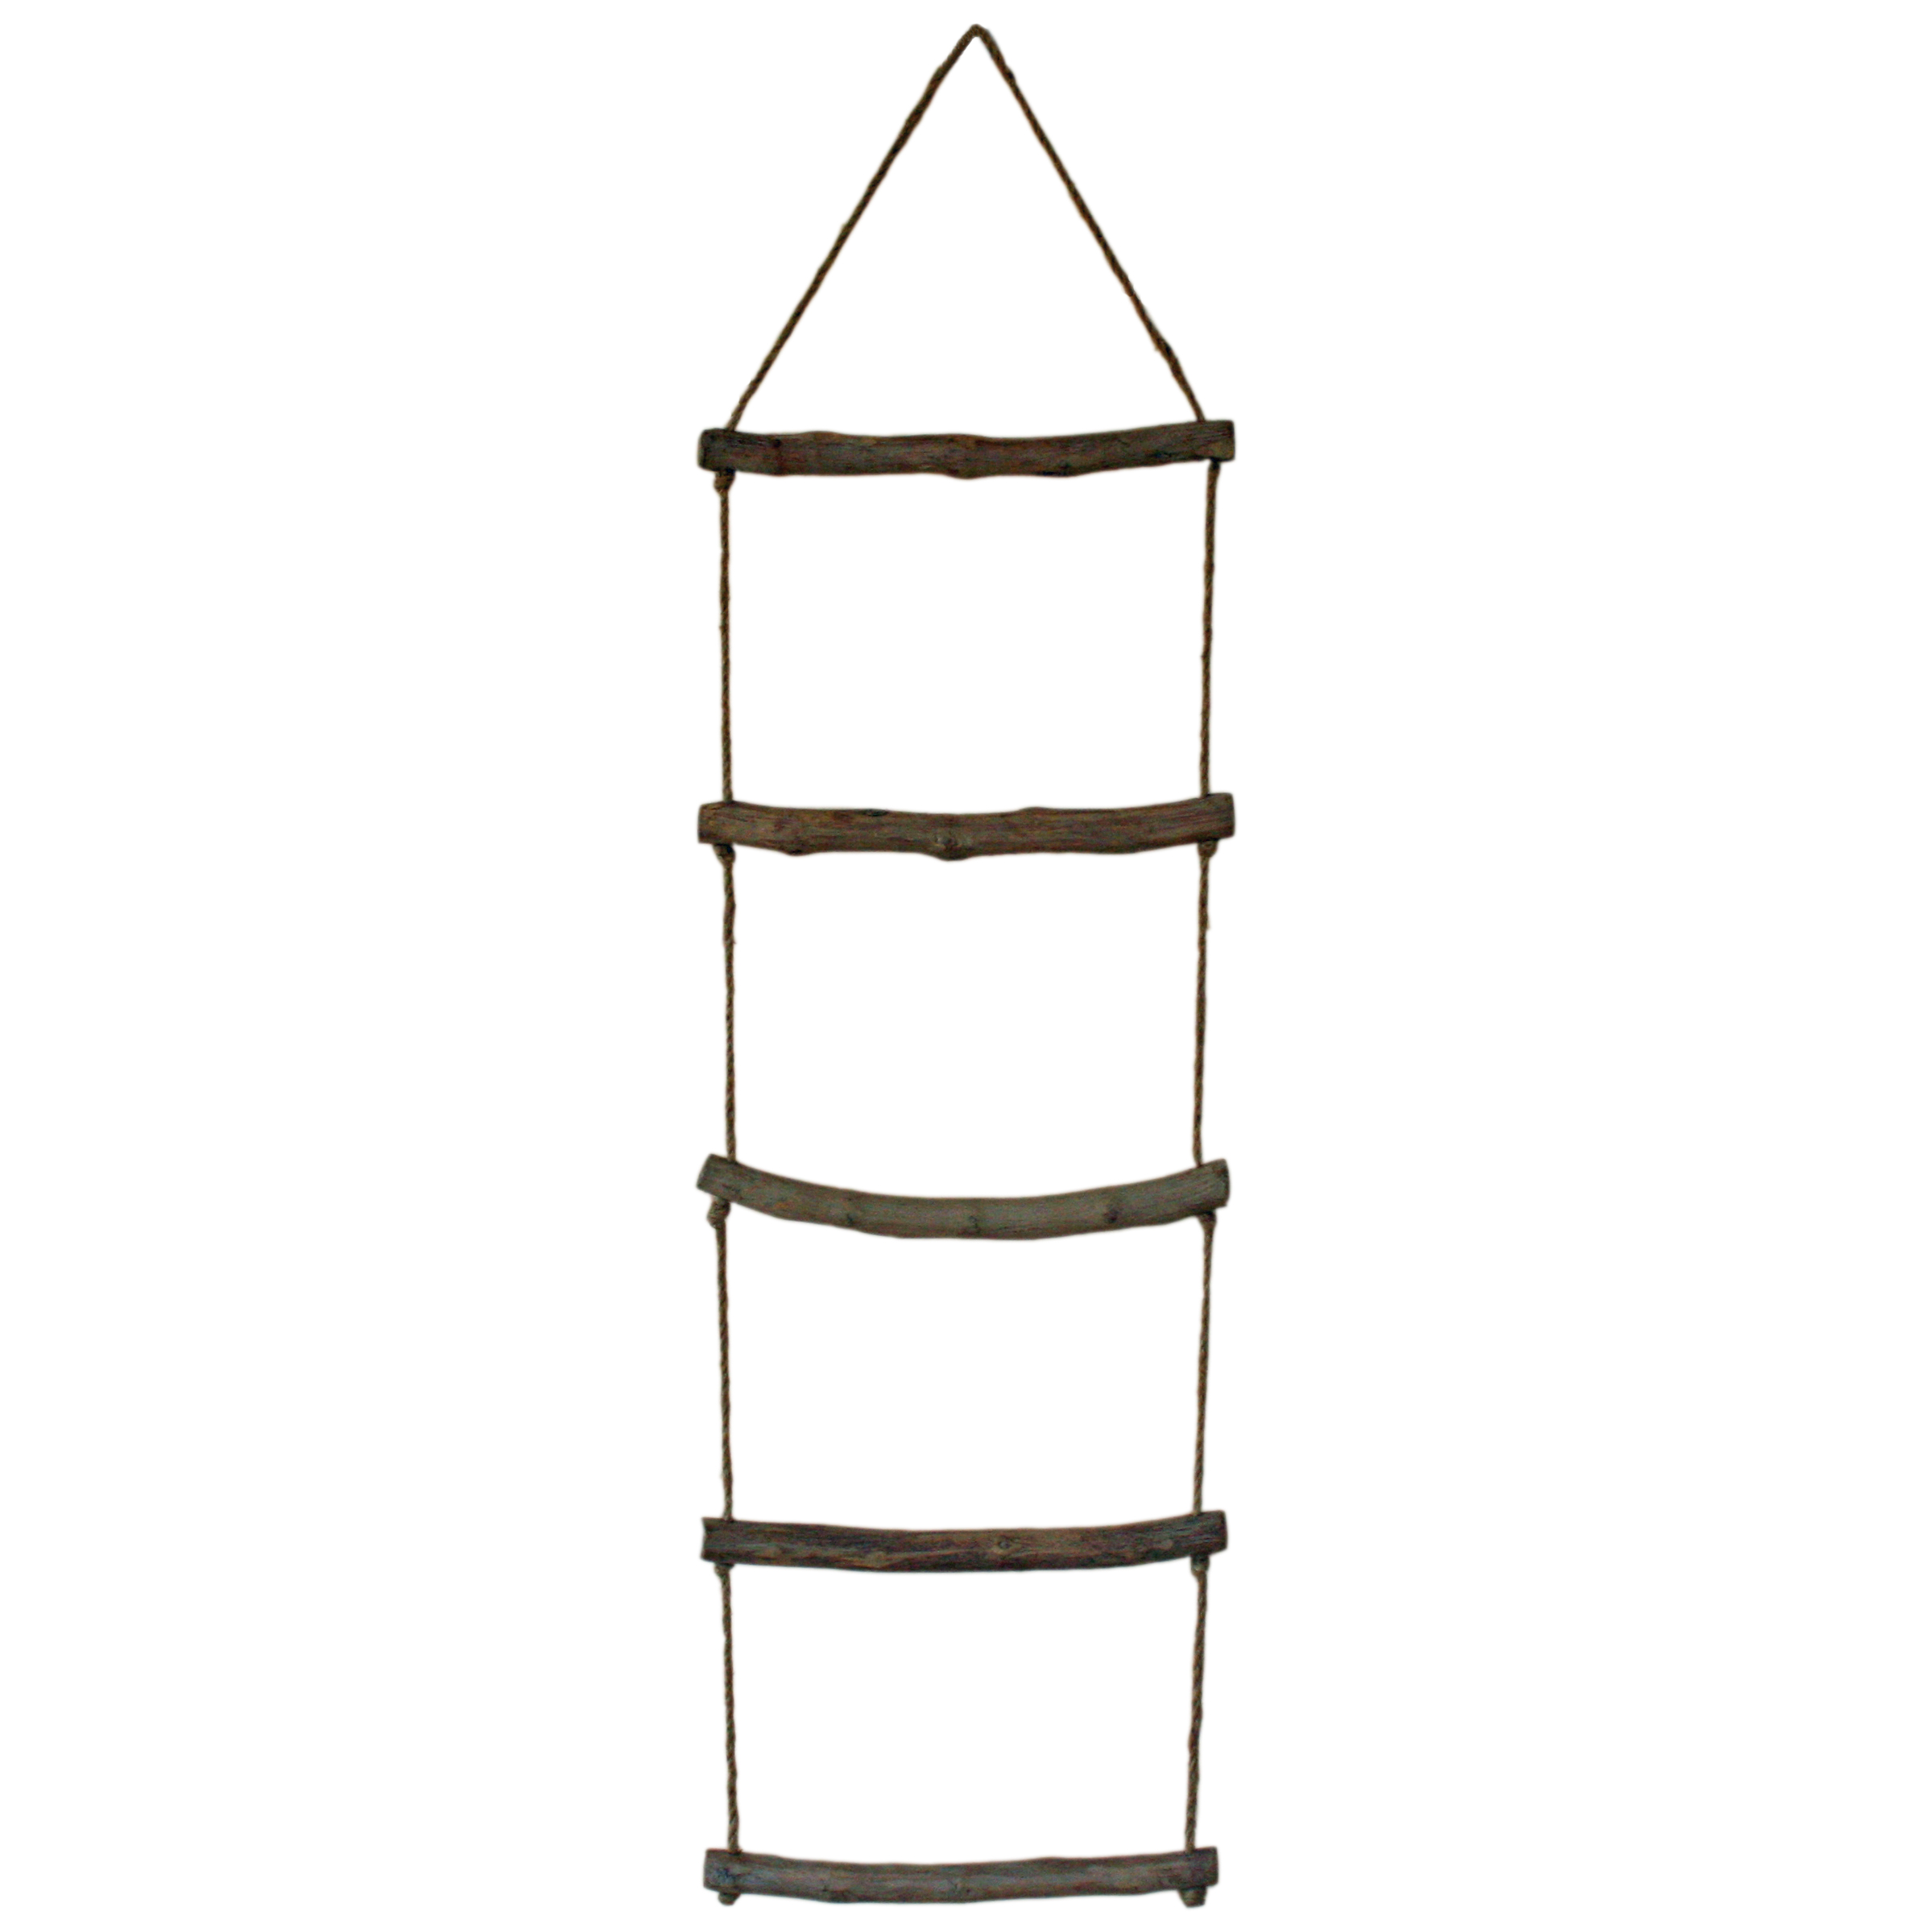 Originals Rustic Wooden Rope Ladder Hanging Towel Rail